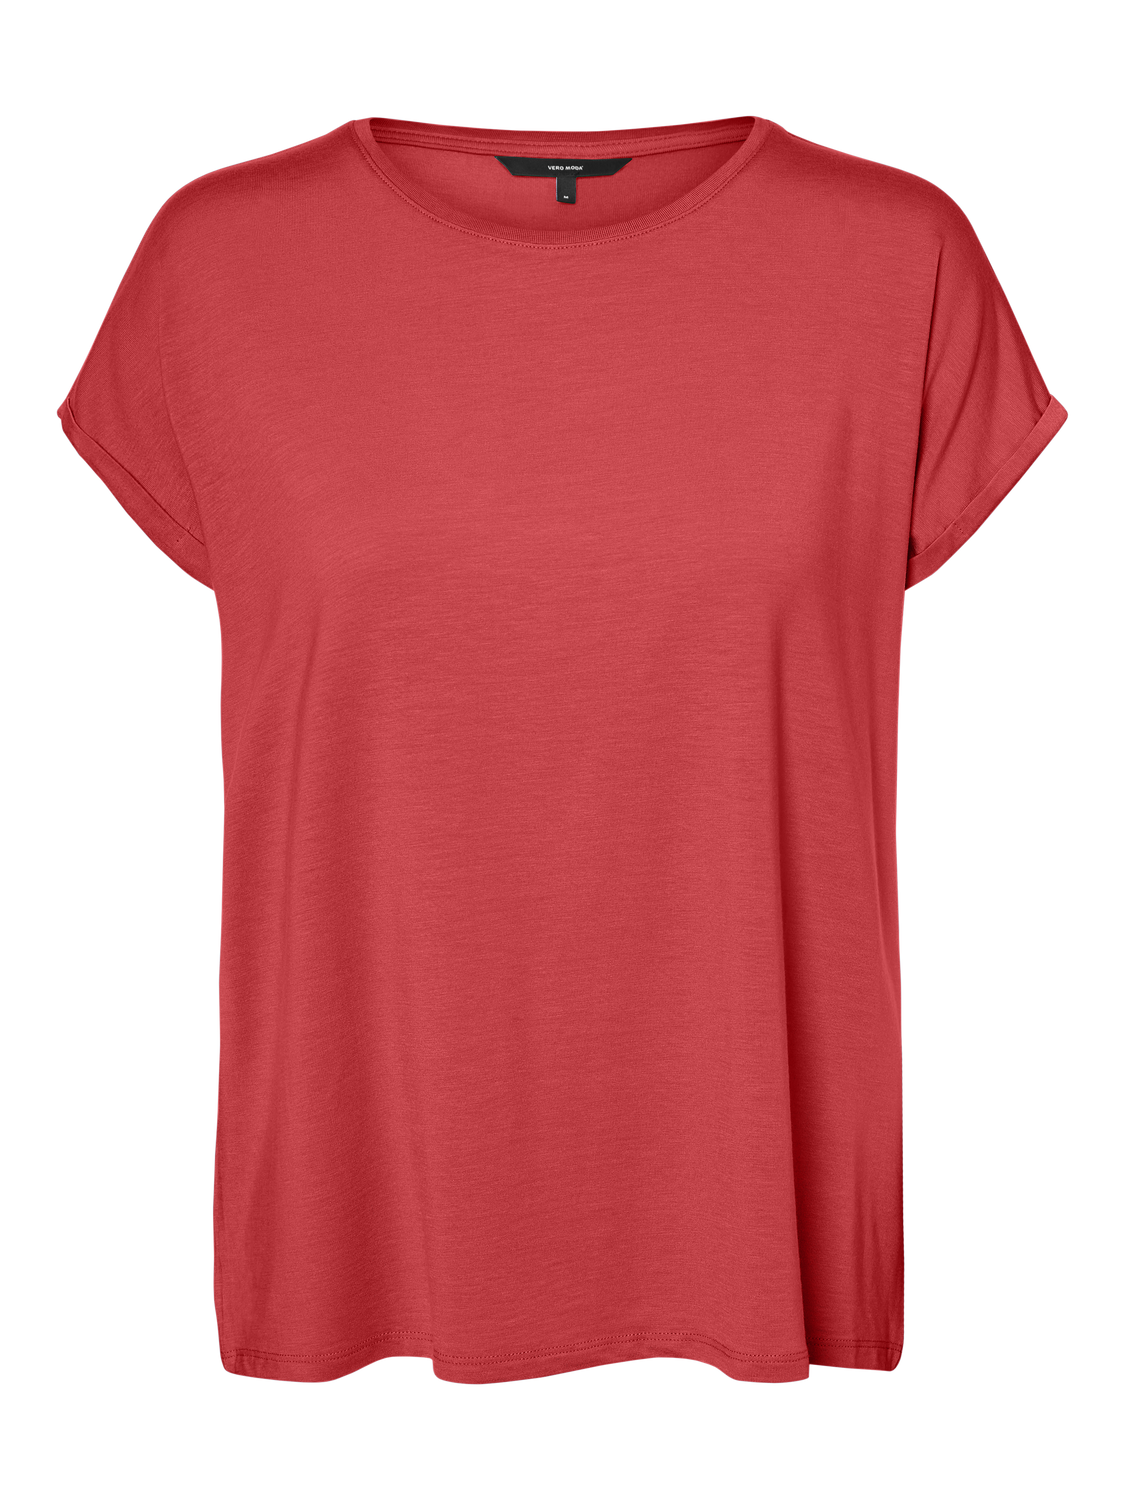 VMAVA T-Shirt - Cayenne